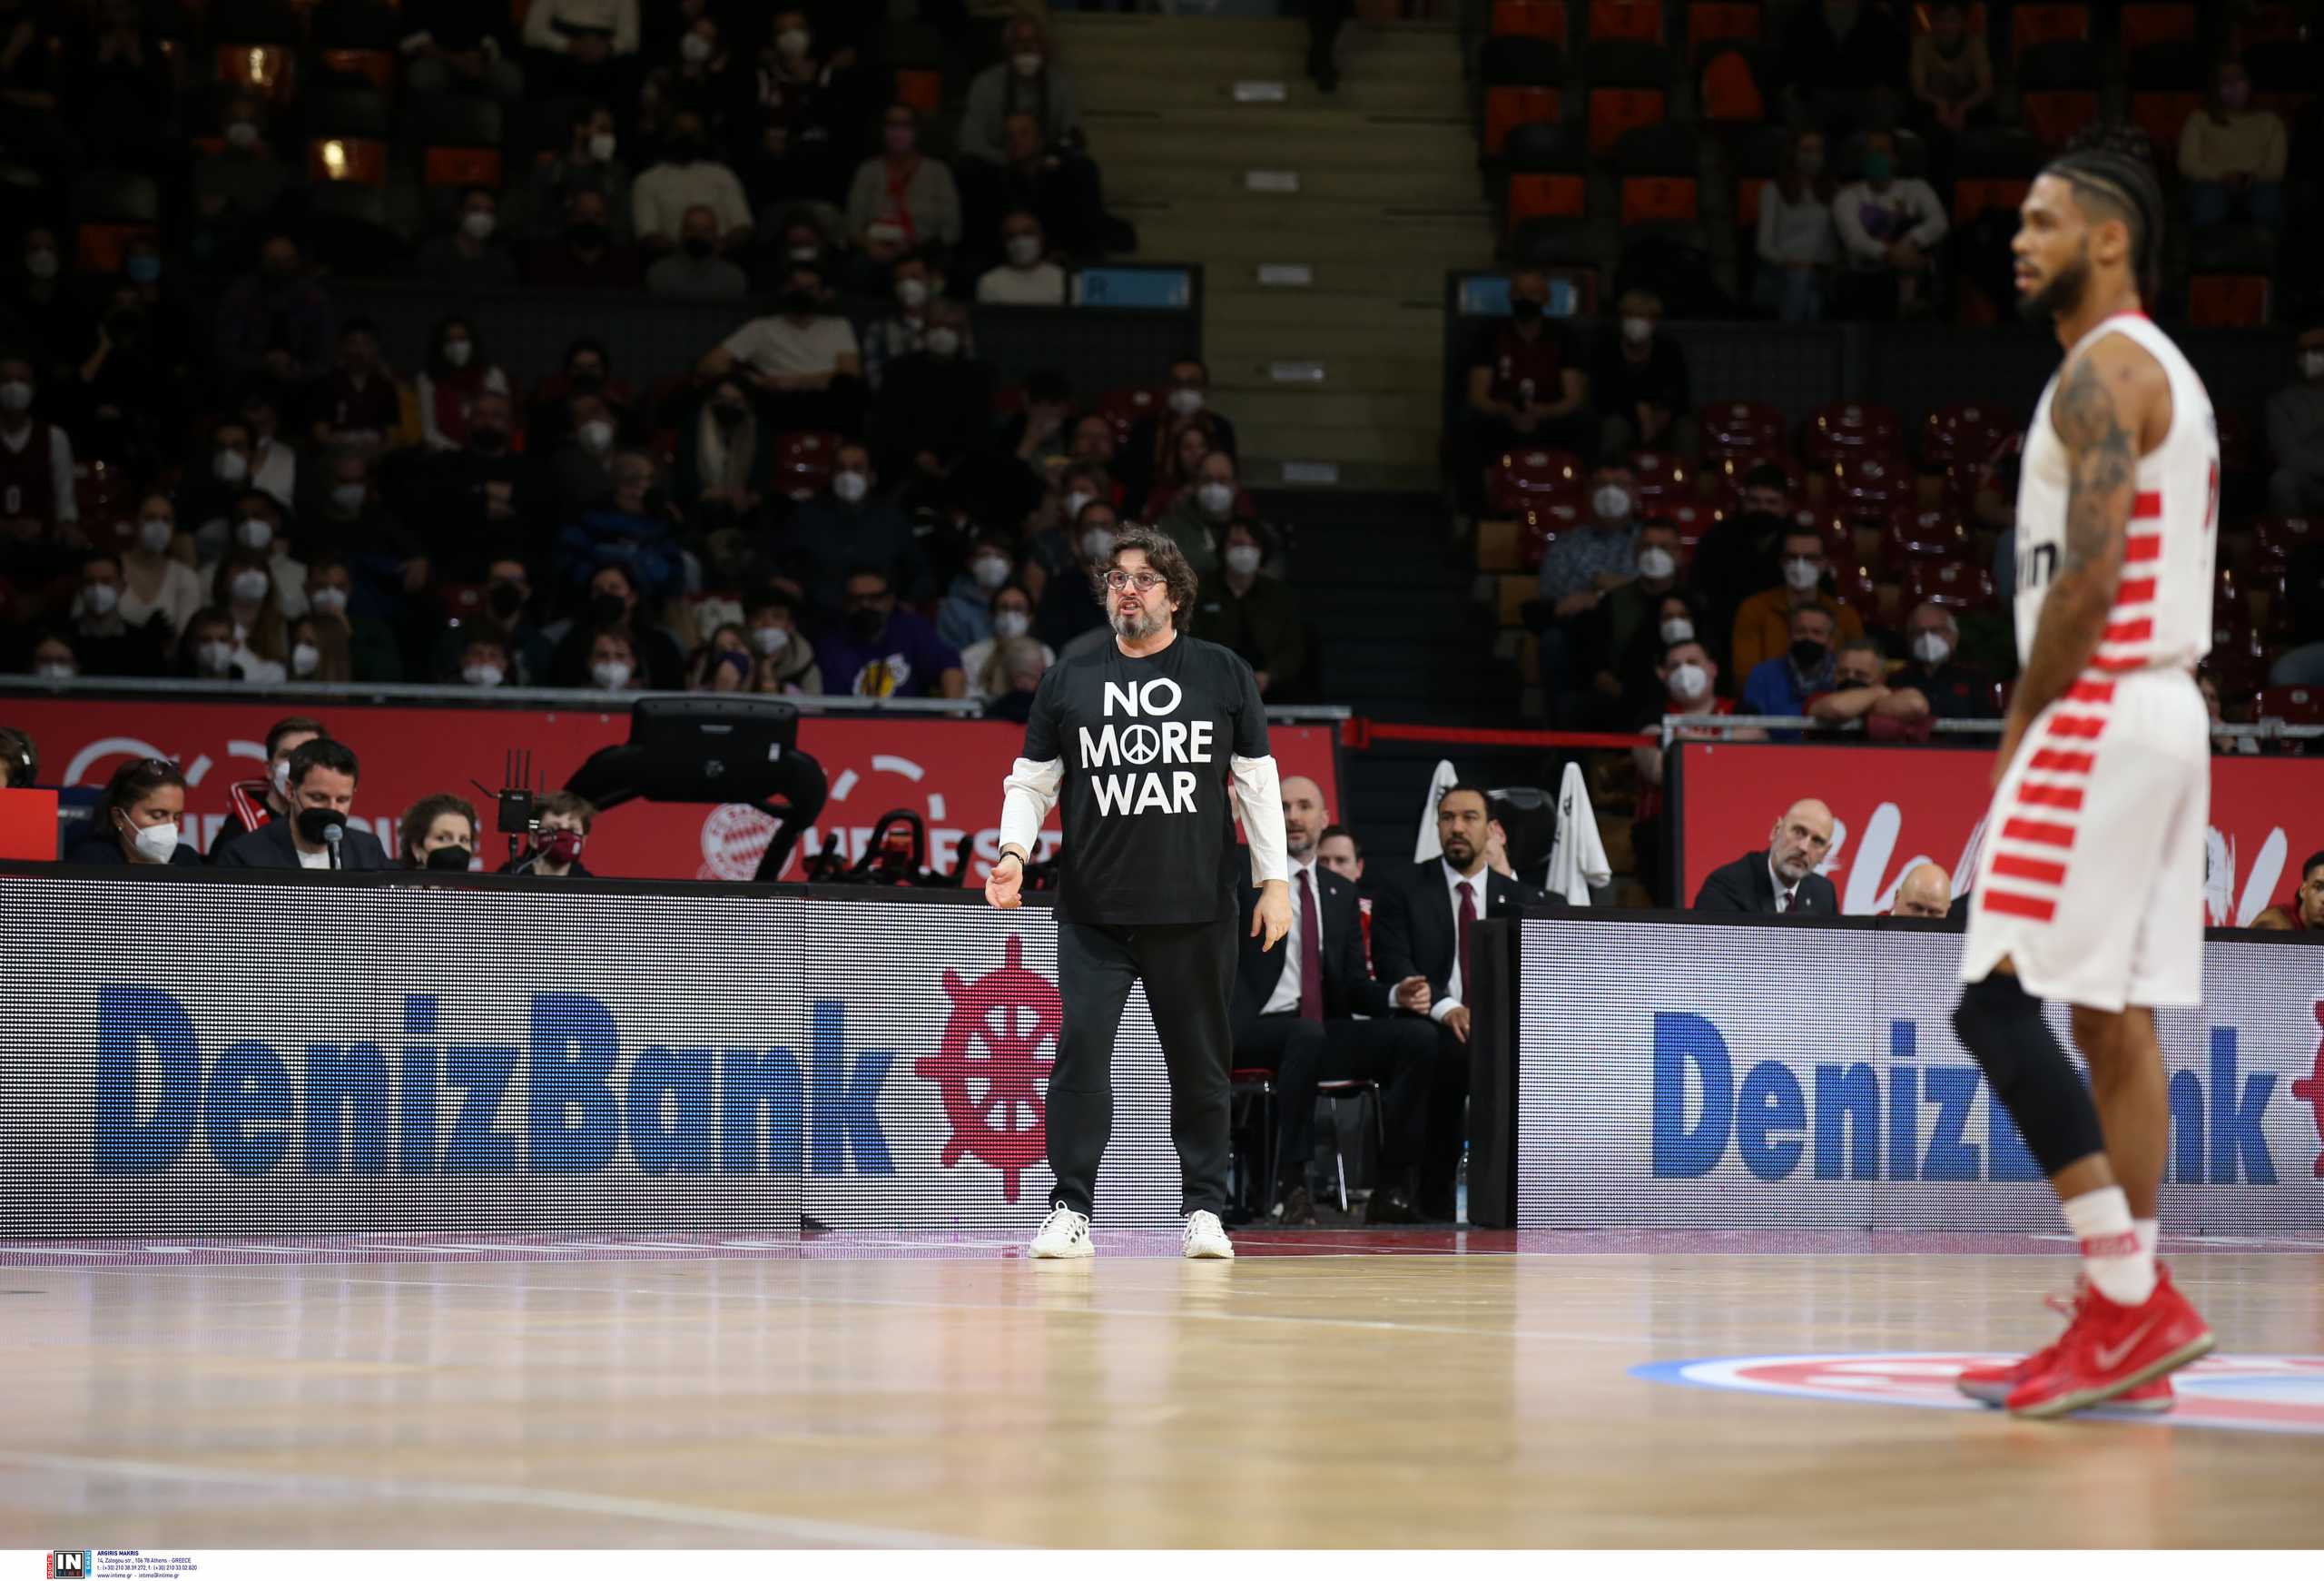 Ολυμπιακός: Η παράσταση του Τάιλερ Ντόρσεϊ στο Μόναχο – «Μας σκότωσε» παραδέχθηκε ο Αντρέα Τρινκιέρι